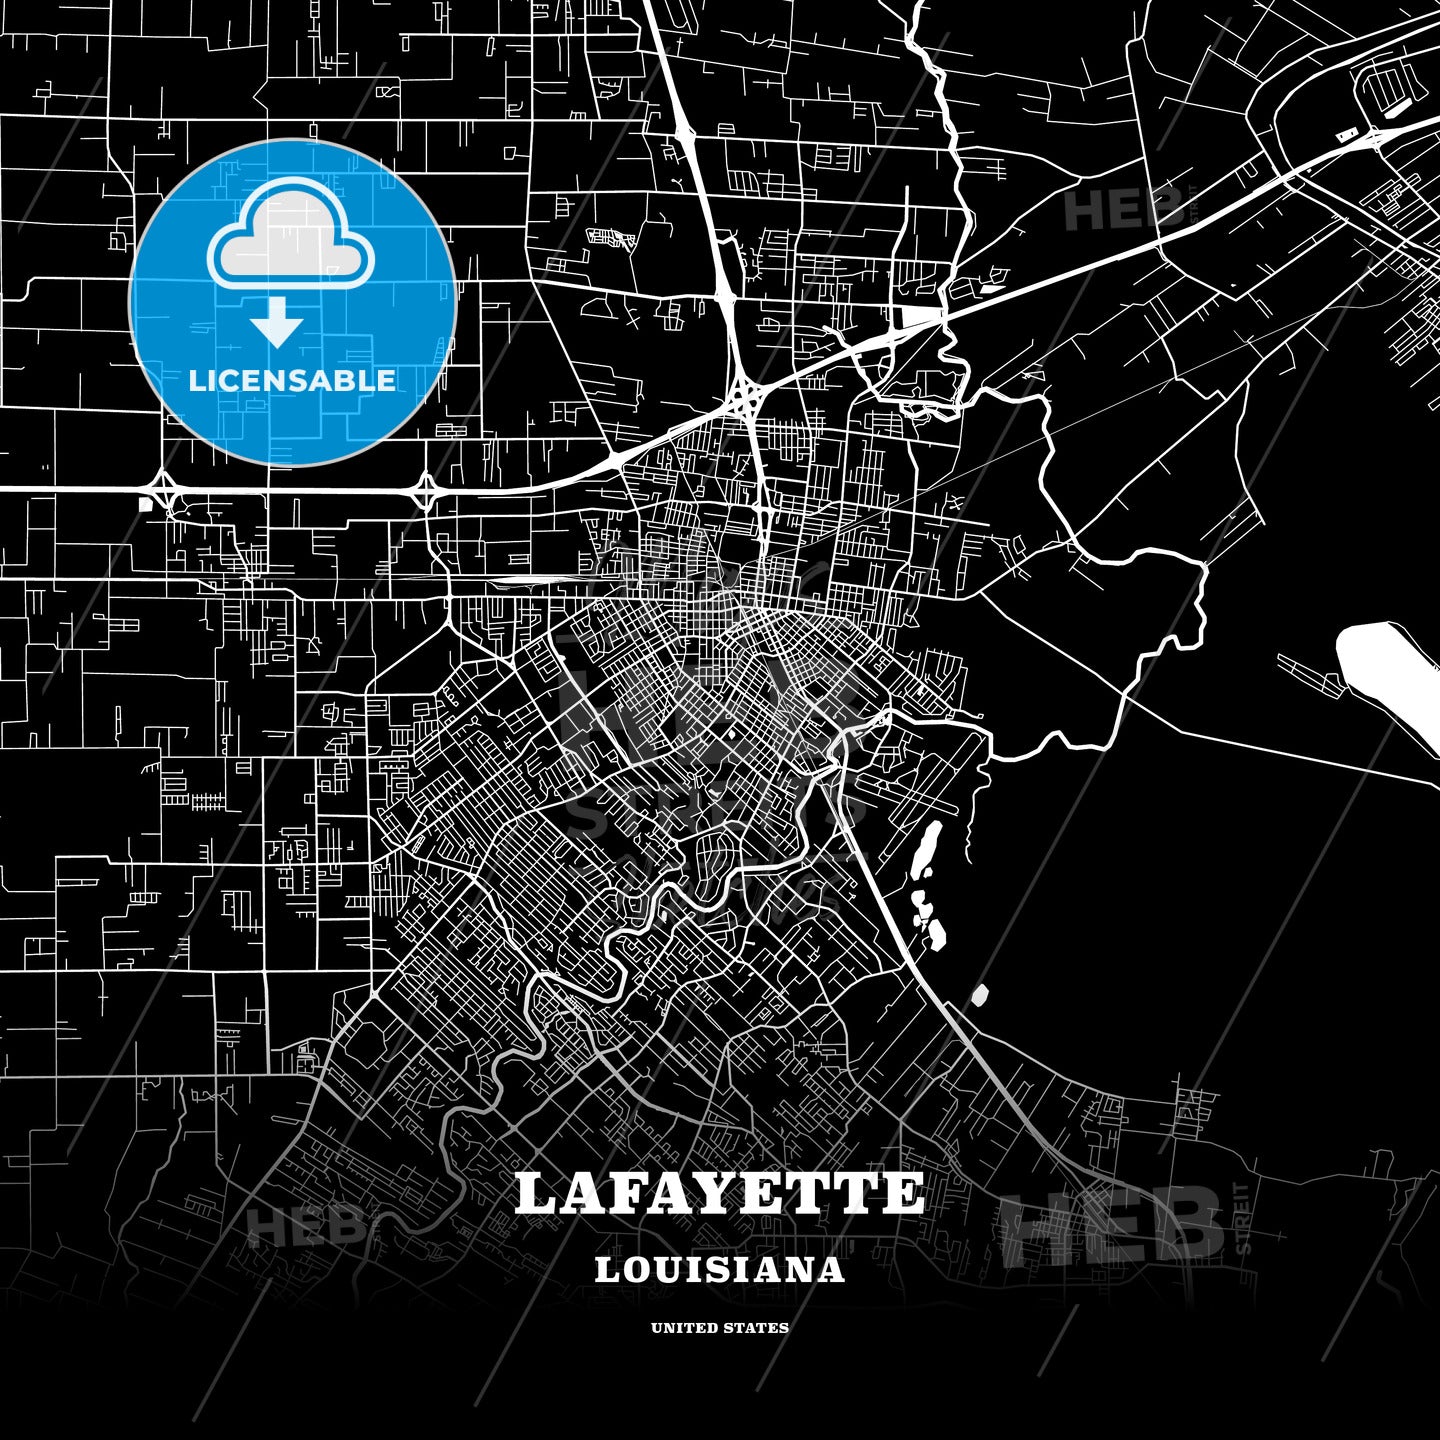 Lafayette, Louisiana, USA map